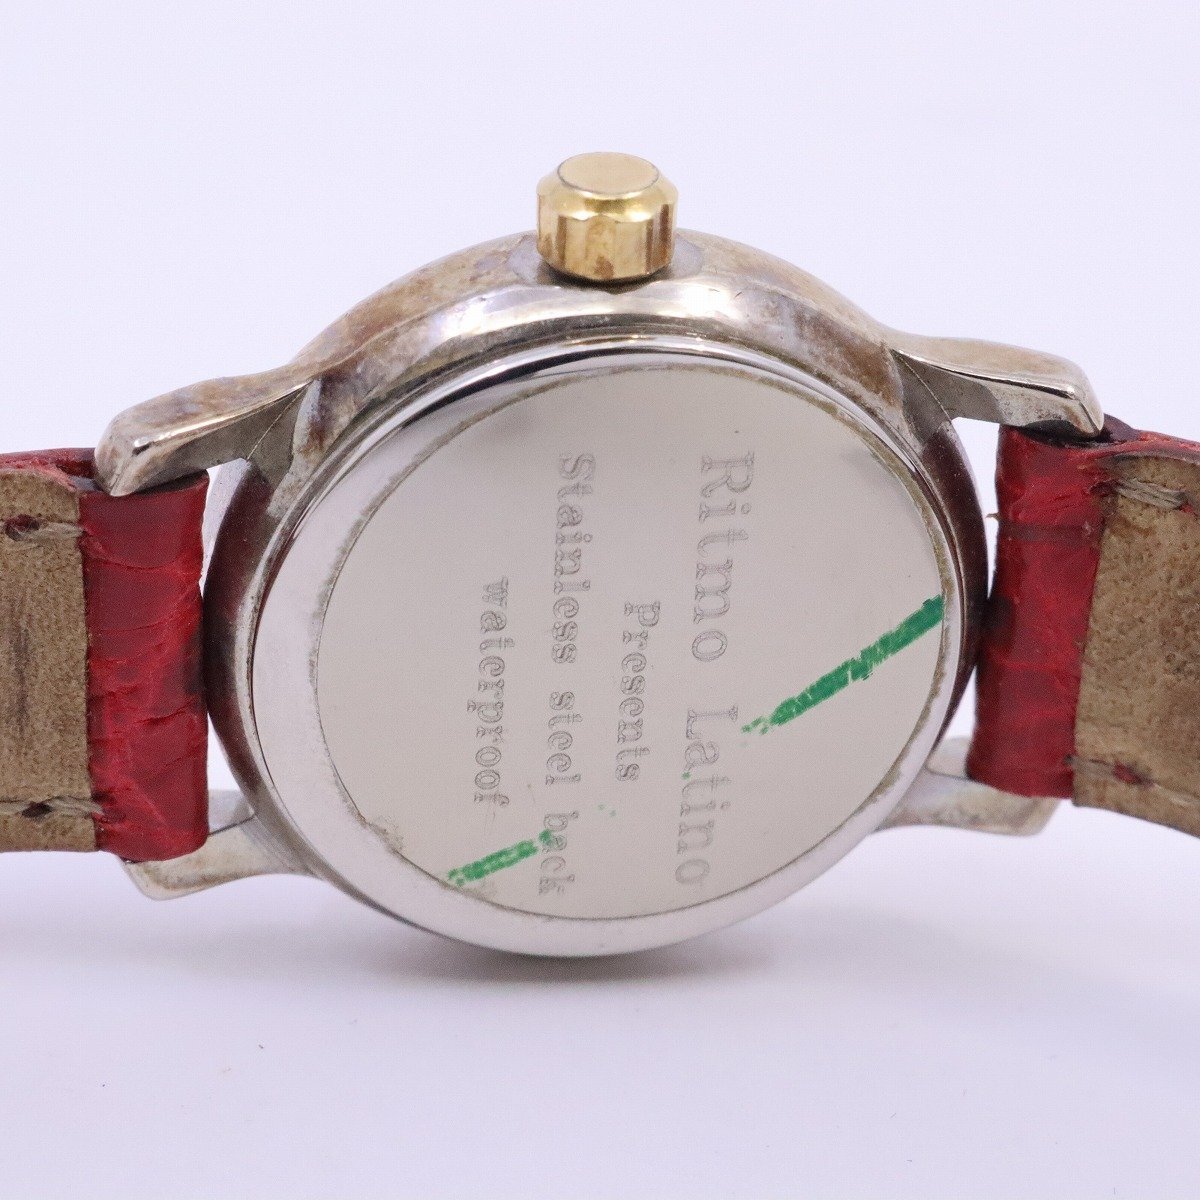  Ritmo Latino do-tichi кварц женские наручные часы комбинированный слоновая кость циферблат оригинальный красный кожа ремень [... ломбард ]